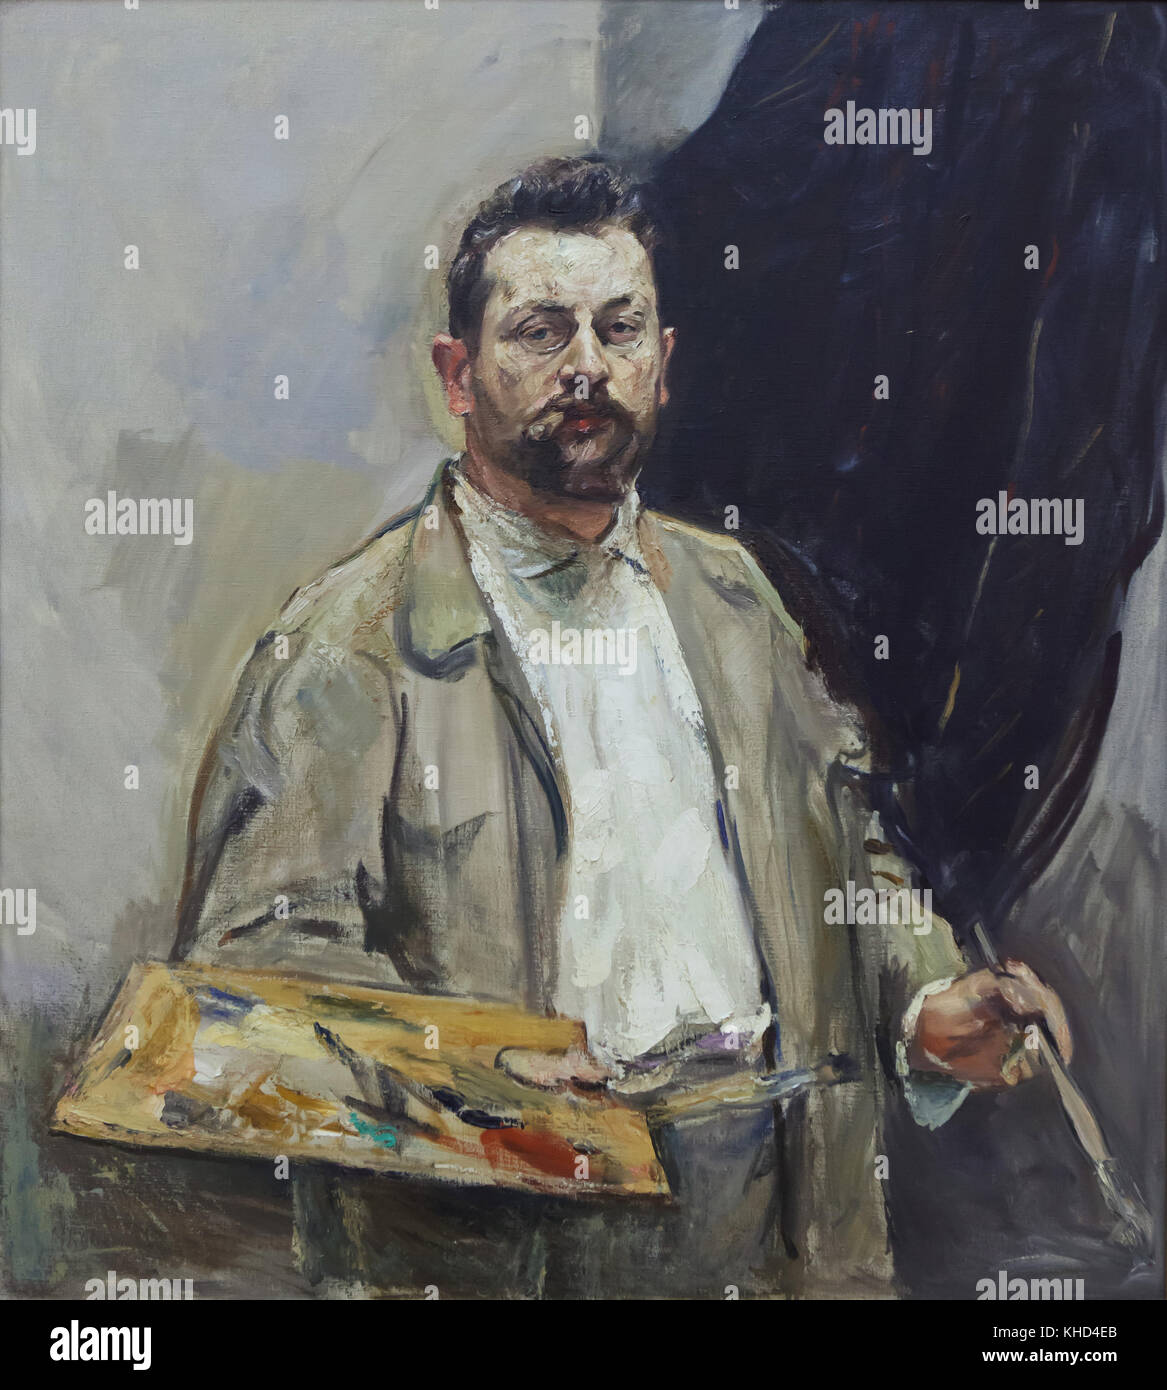 Peintre allemand Max Slevogt. Détail de l'œuvre 'auto-portrait avec la Palette' (1906) par peintre allemand Max Slevogt exposées au Musée des beaux-arts (Musée des beaux-arts) à Leipzig, Saxe, Allemagne. Banque D'Images